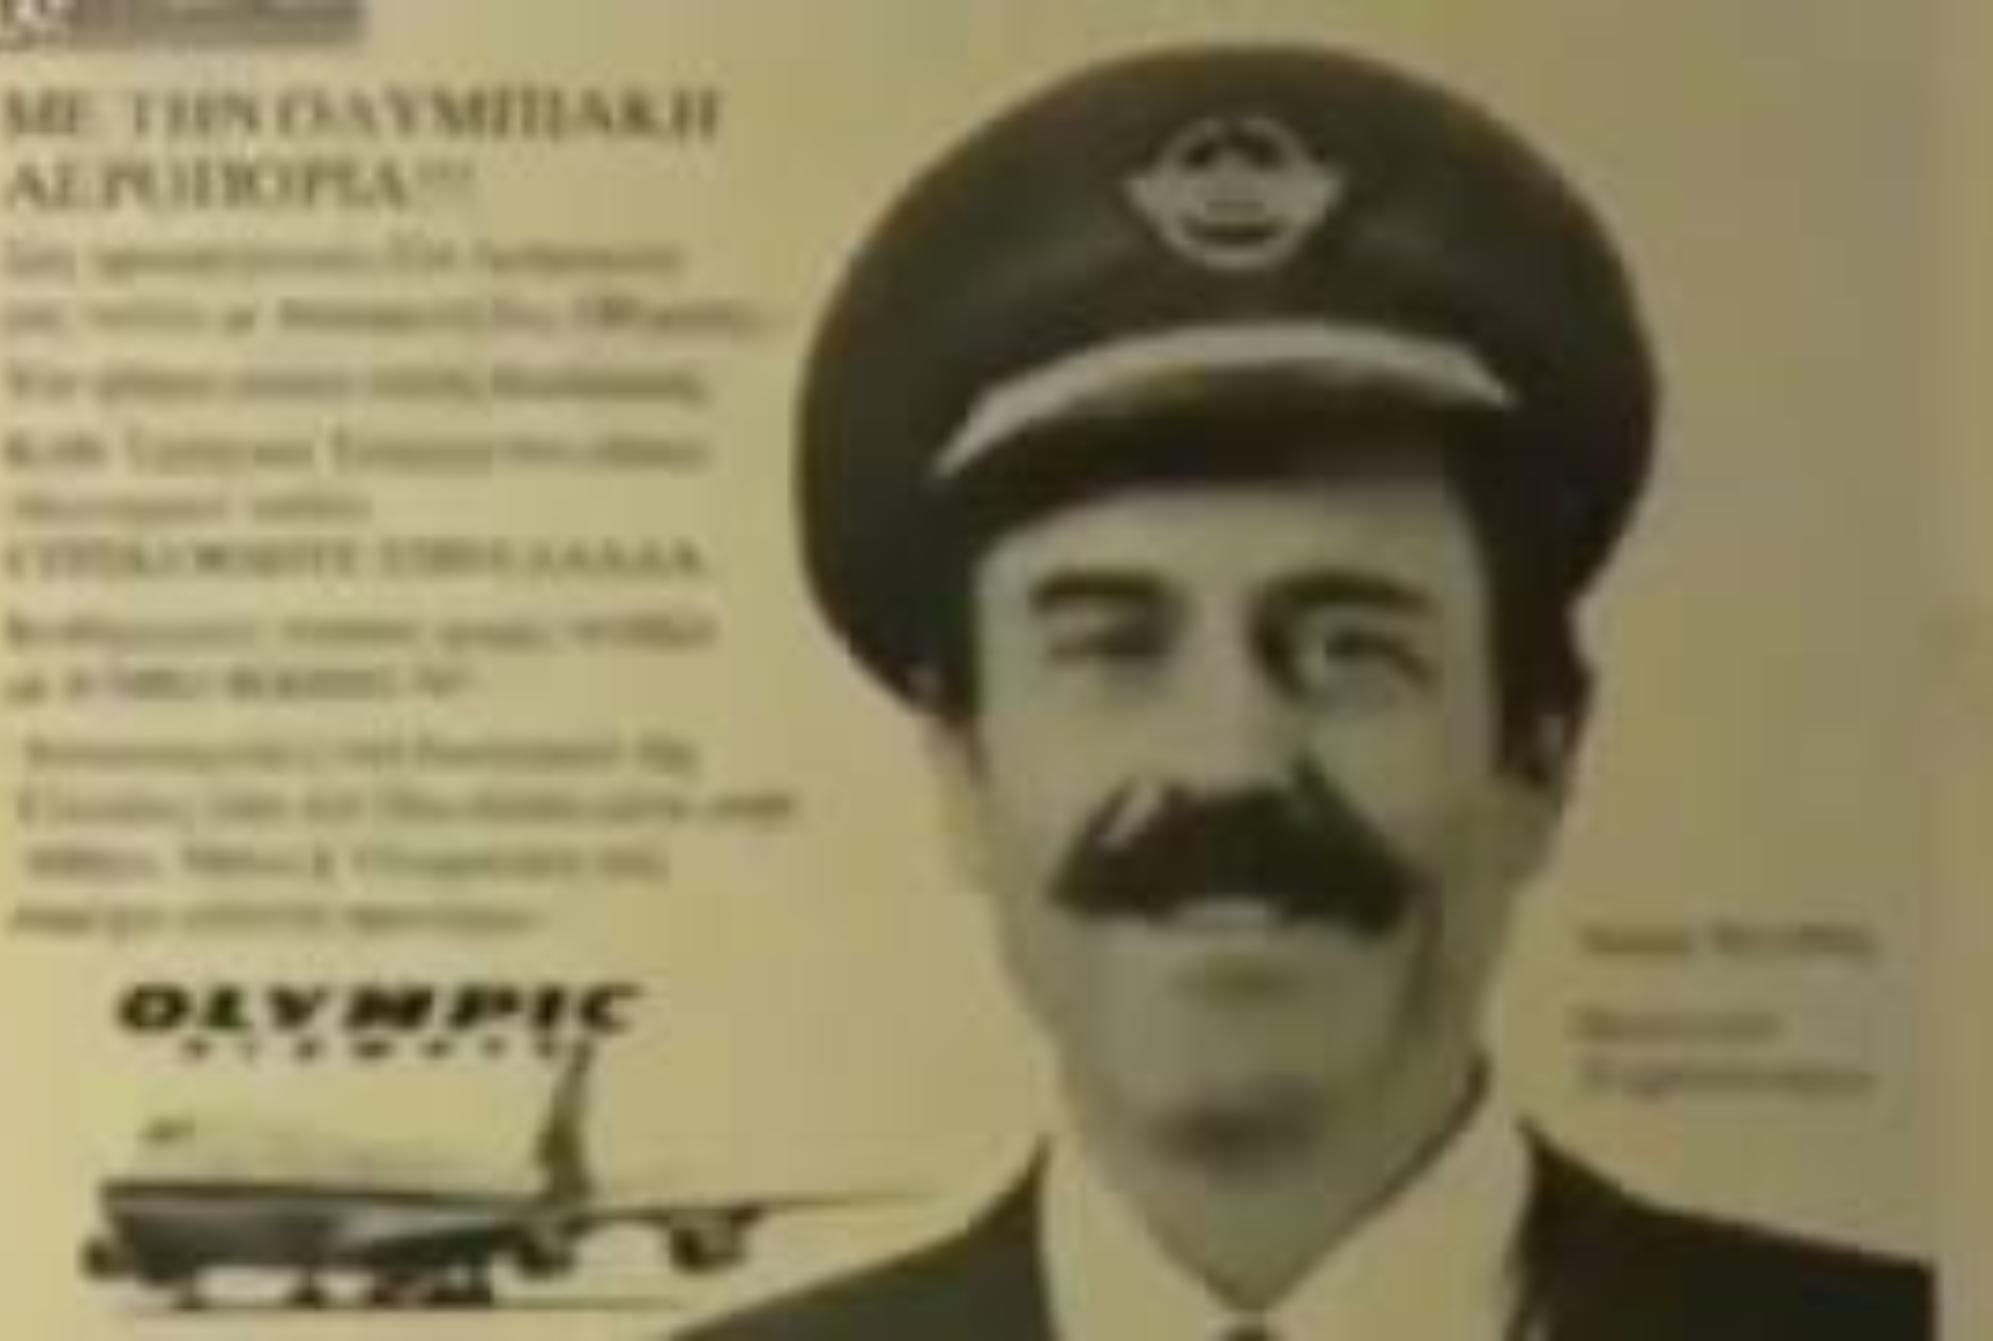 Σήφης Μιγάδης: Ο ήρωας πιλότος που έκανε το ακατόρθωτο – Έσωσε την ζωή 418 ανθρώπων και τον έγραψε η ιστορία